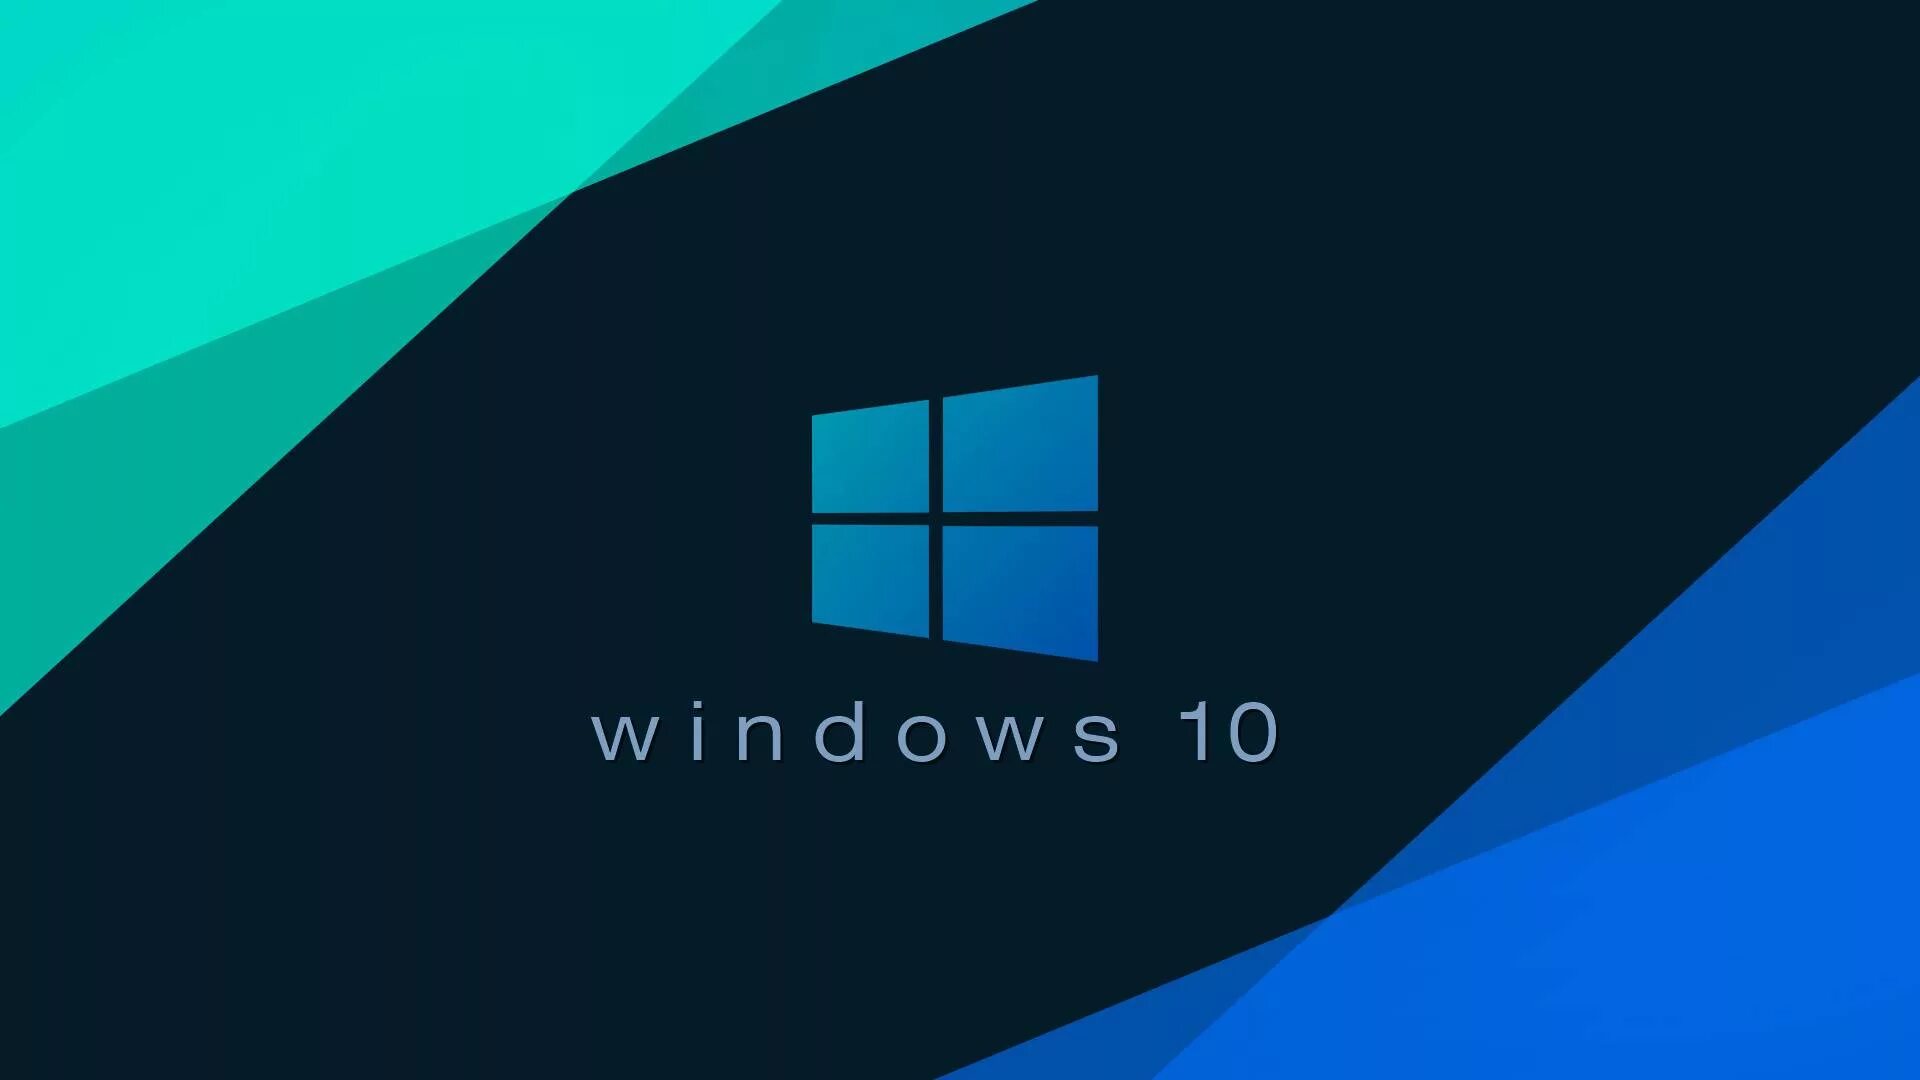 Шрифт вин 10. Виндовс. Виндовс 10. Рабочий стол Windows 10. Картинки Windows 10.